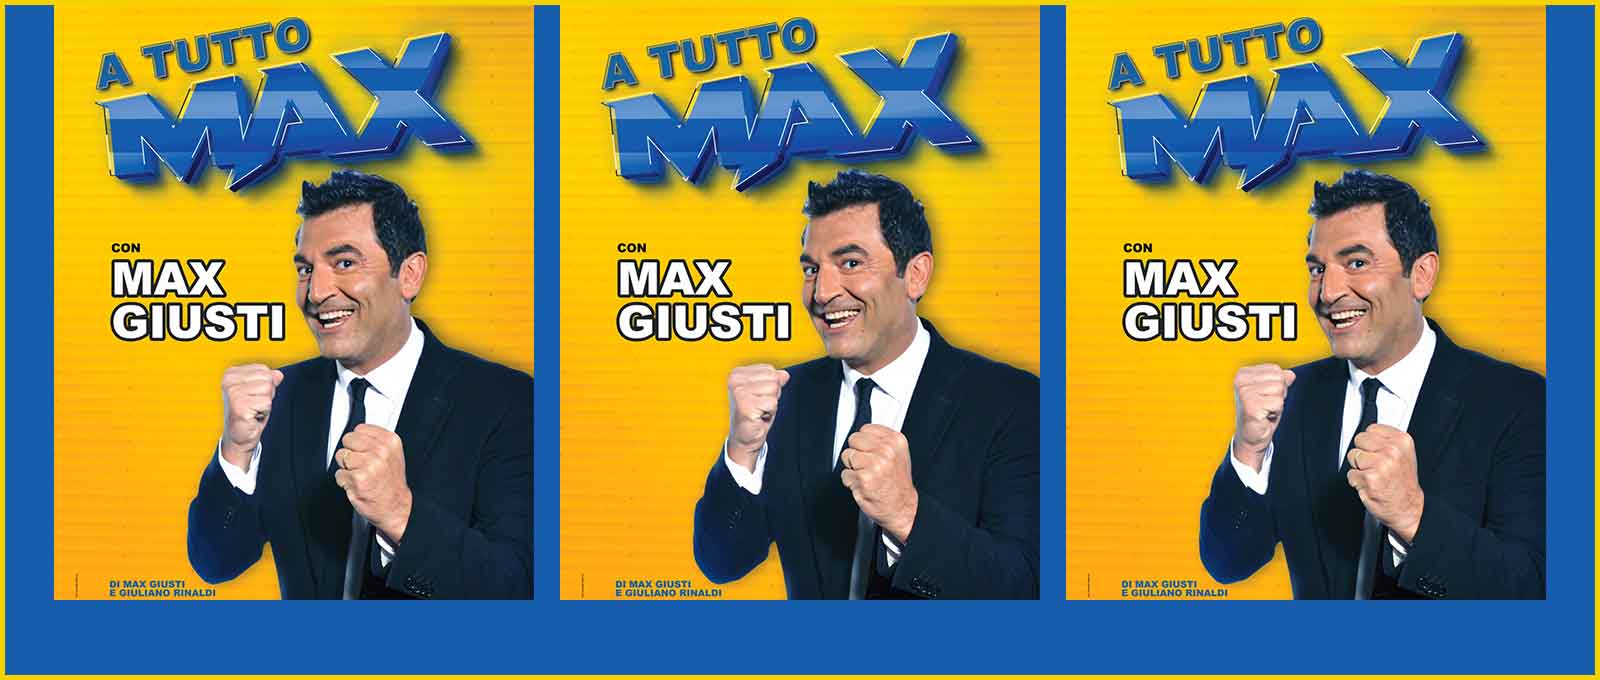 Max Giusti in “A tutto Max”